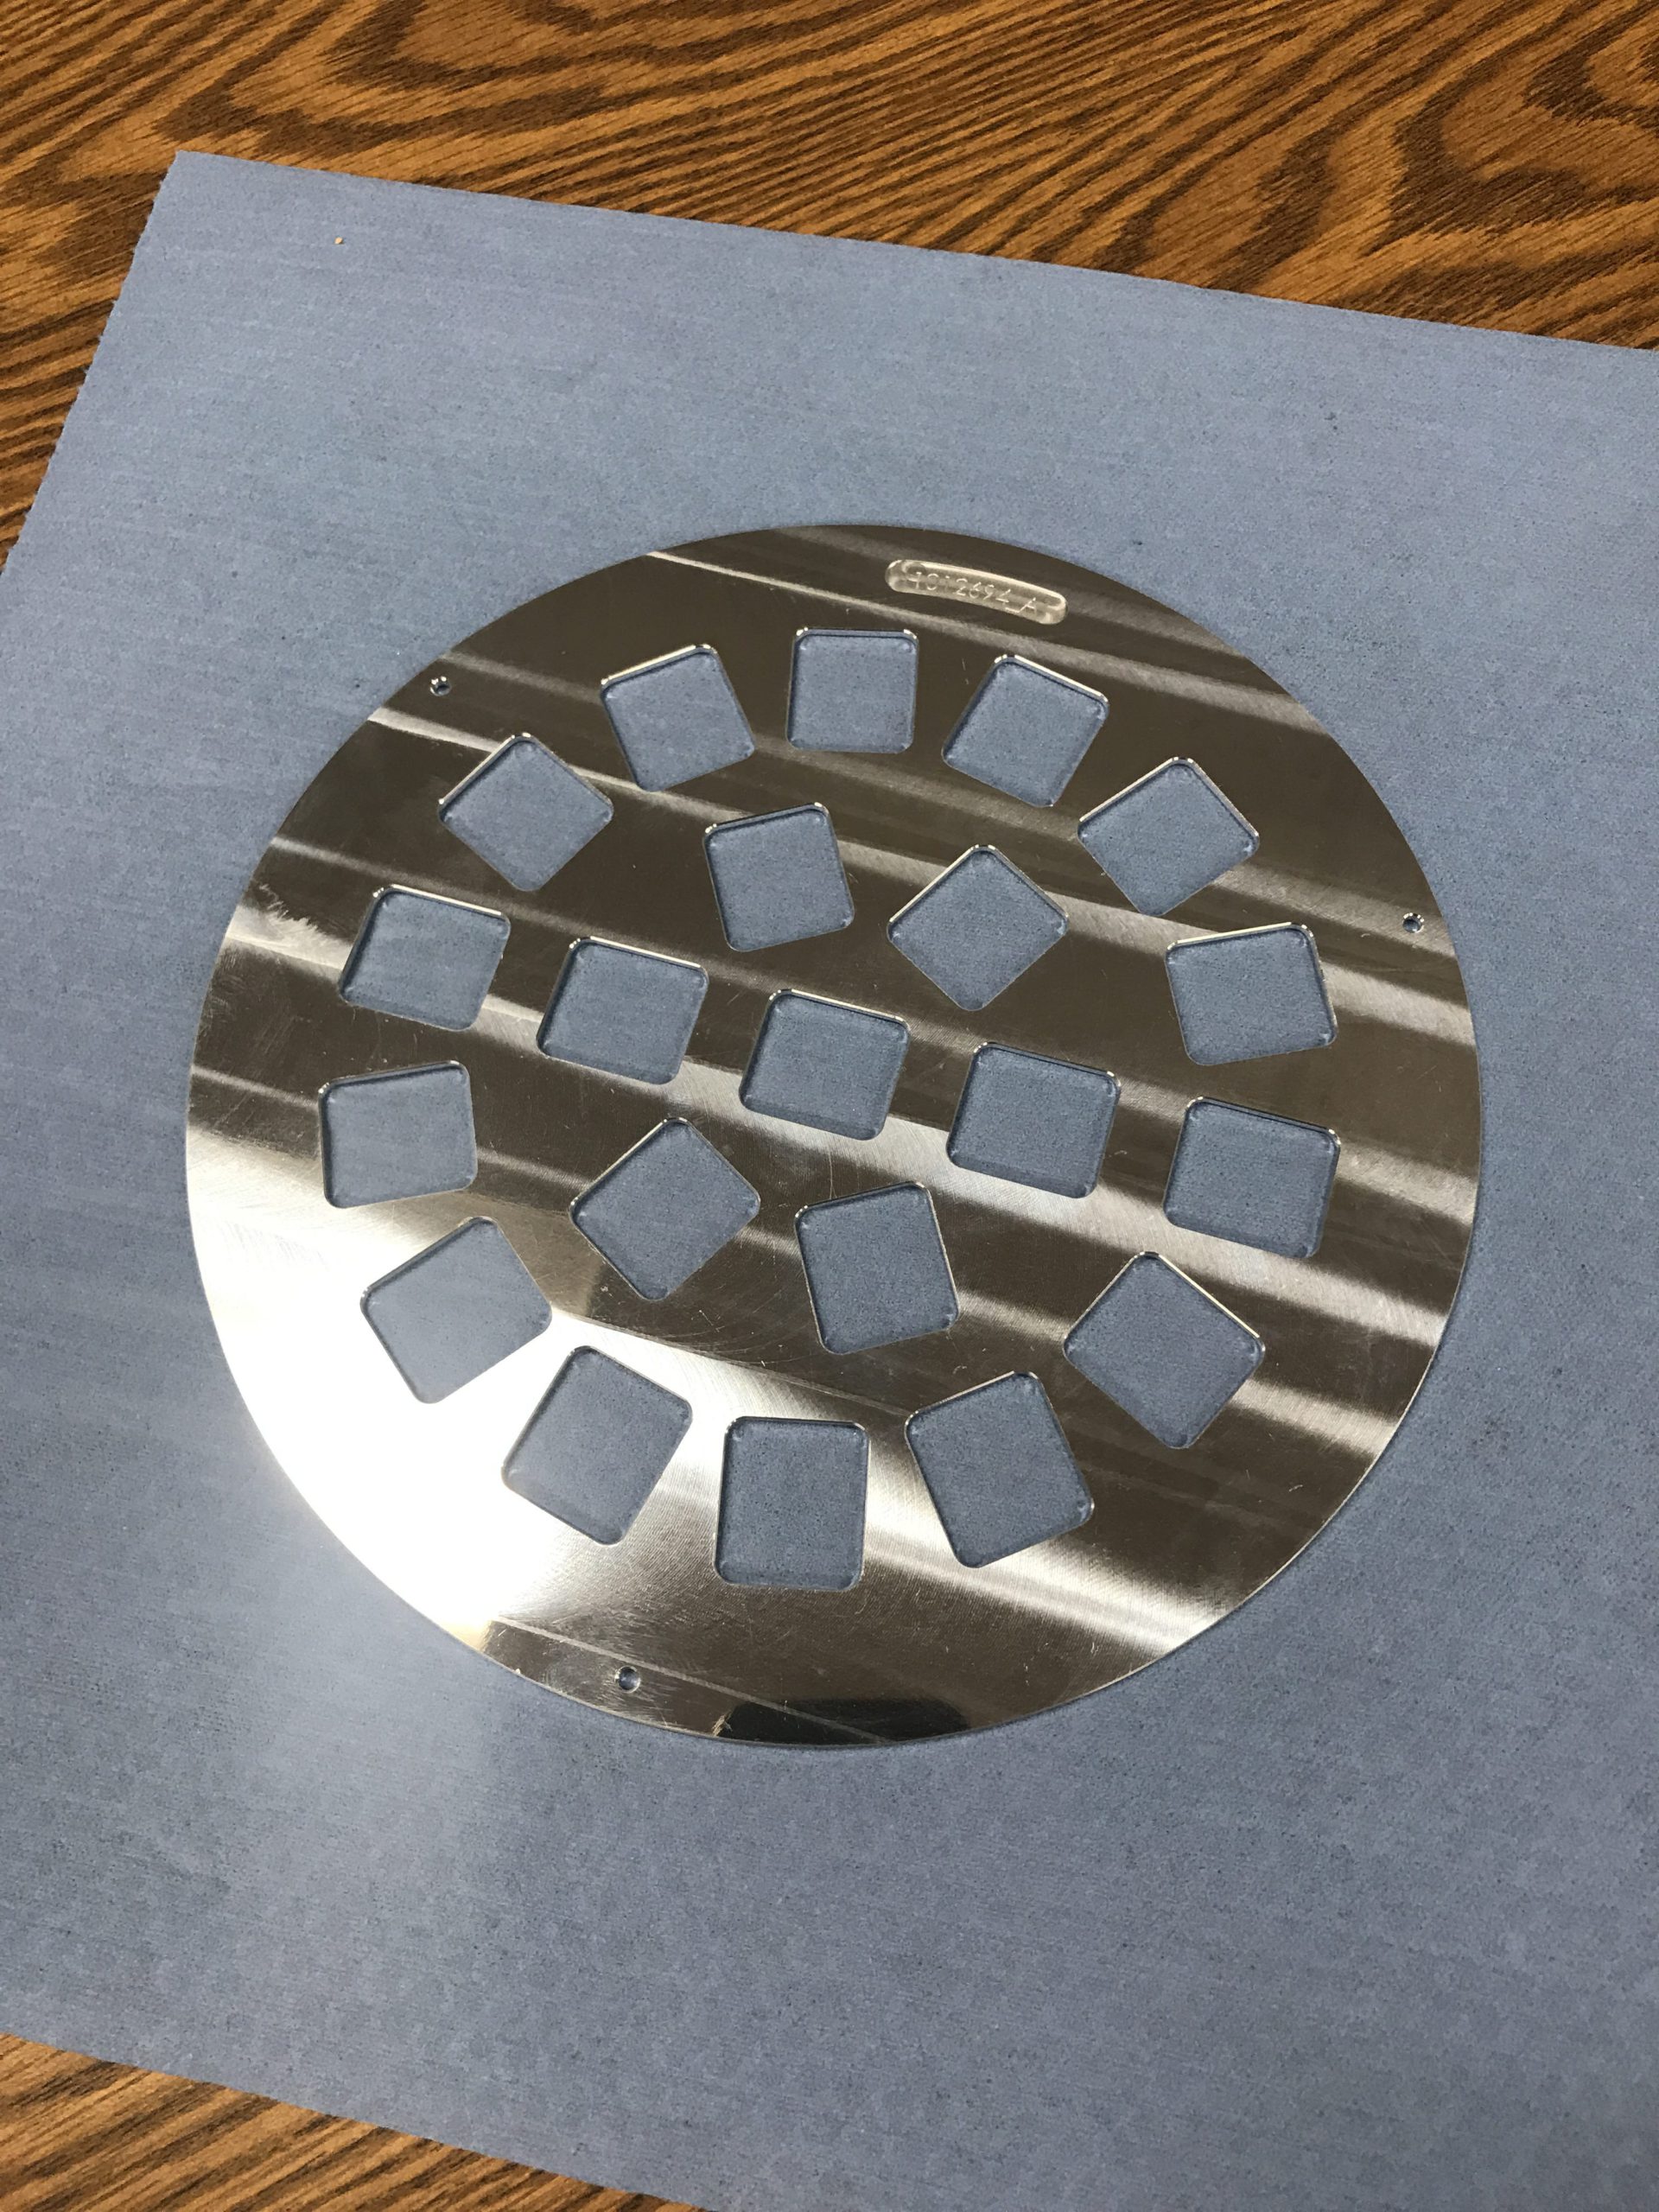 Aluminum plate work